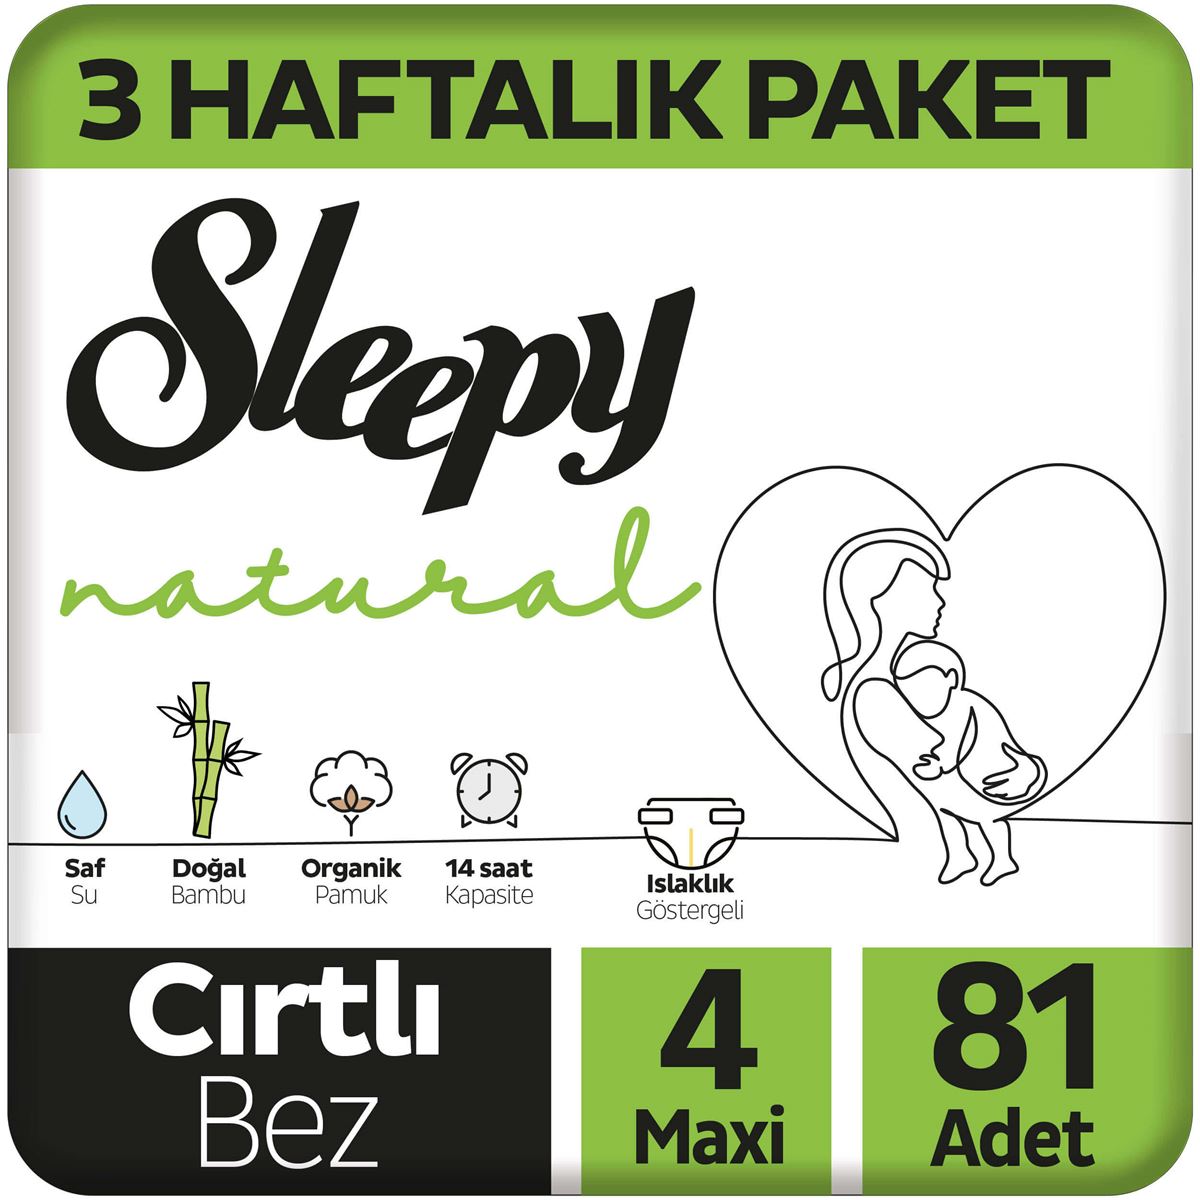 Sleepy Natural 3 Haftalık Paket Bebek Bezi 4 Numara Maxi 81 Adet